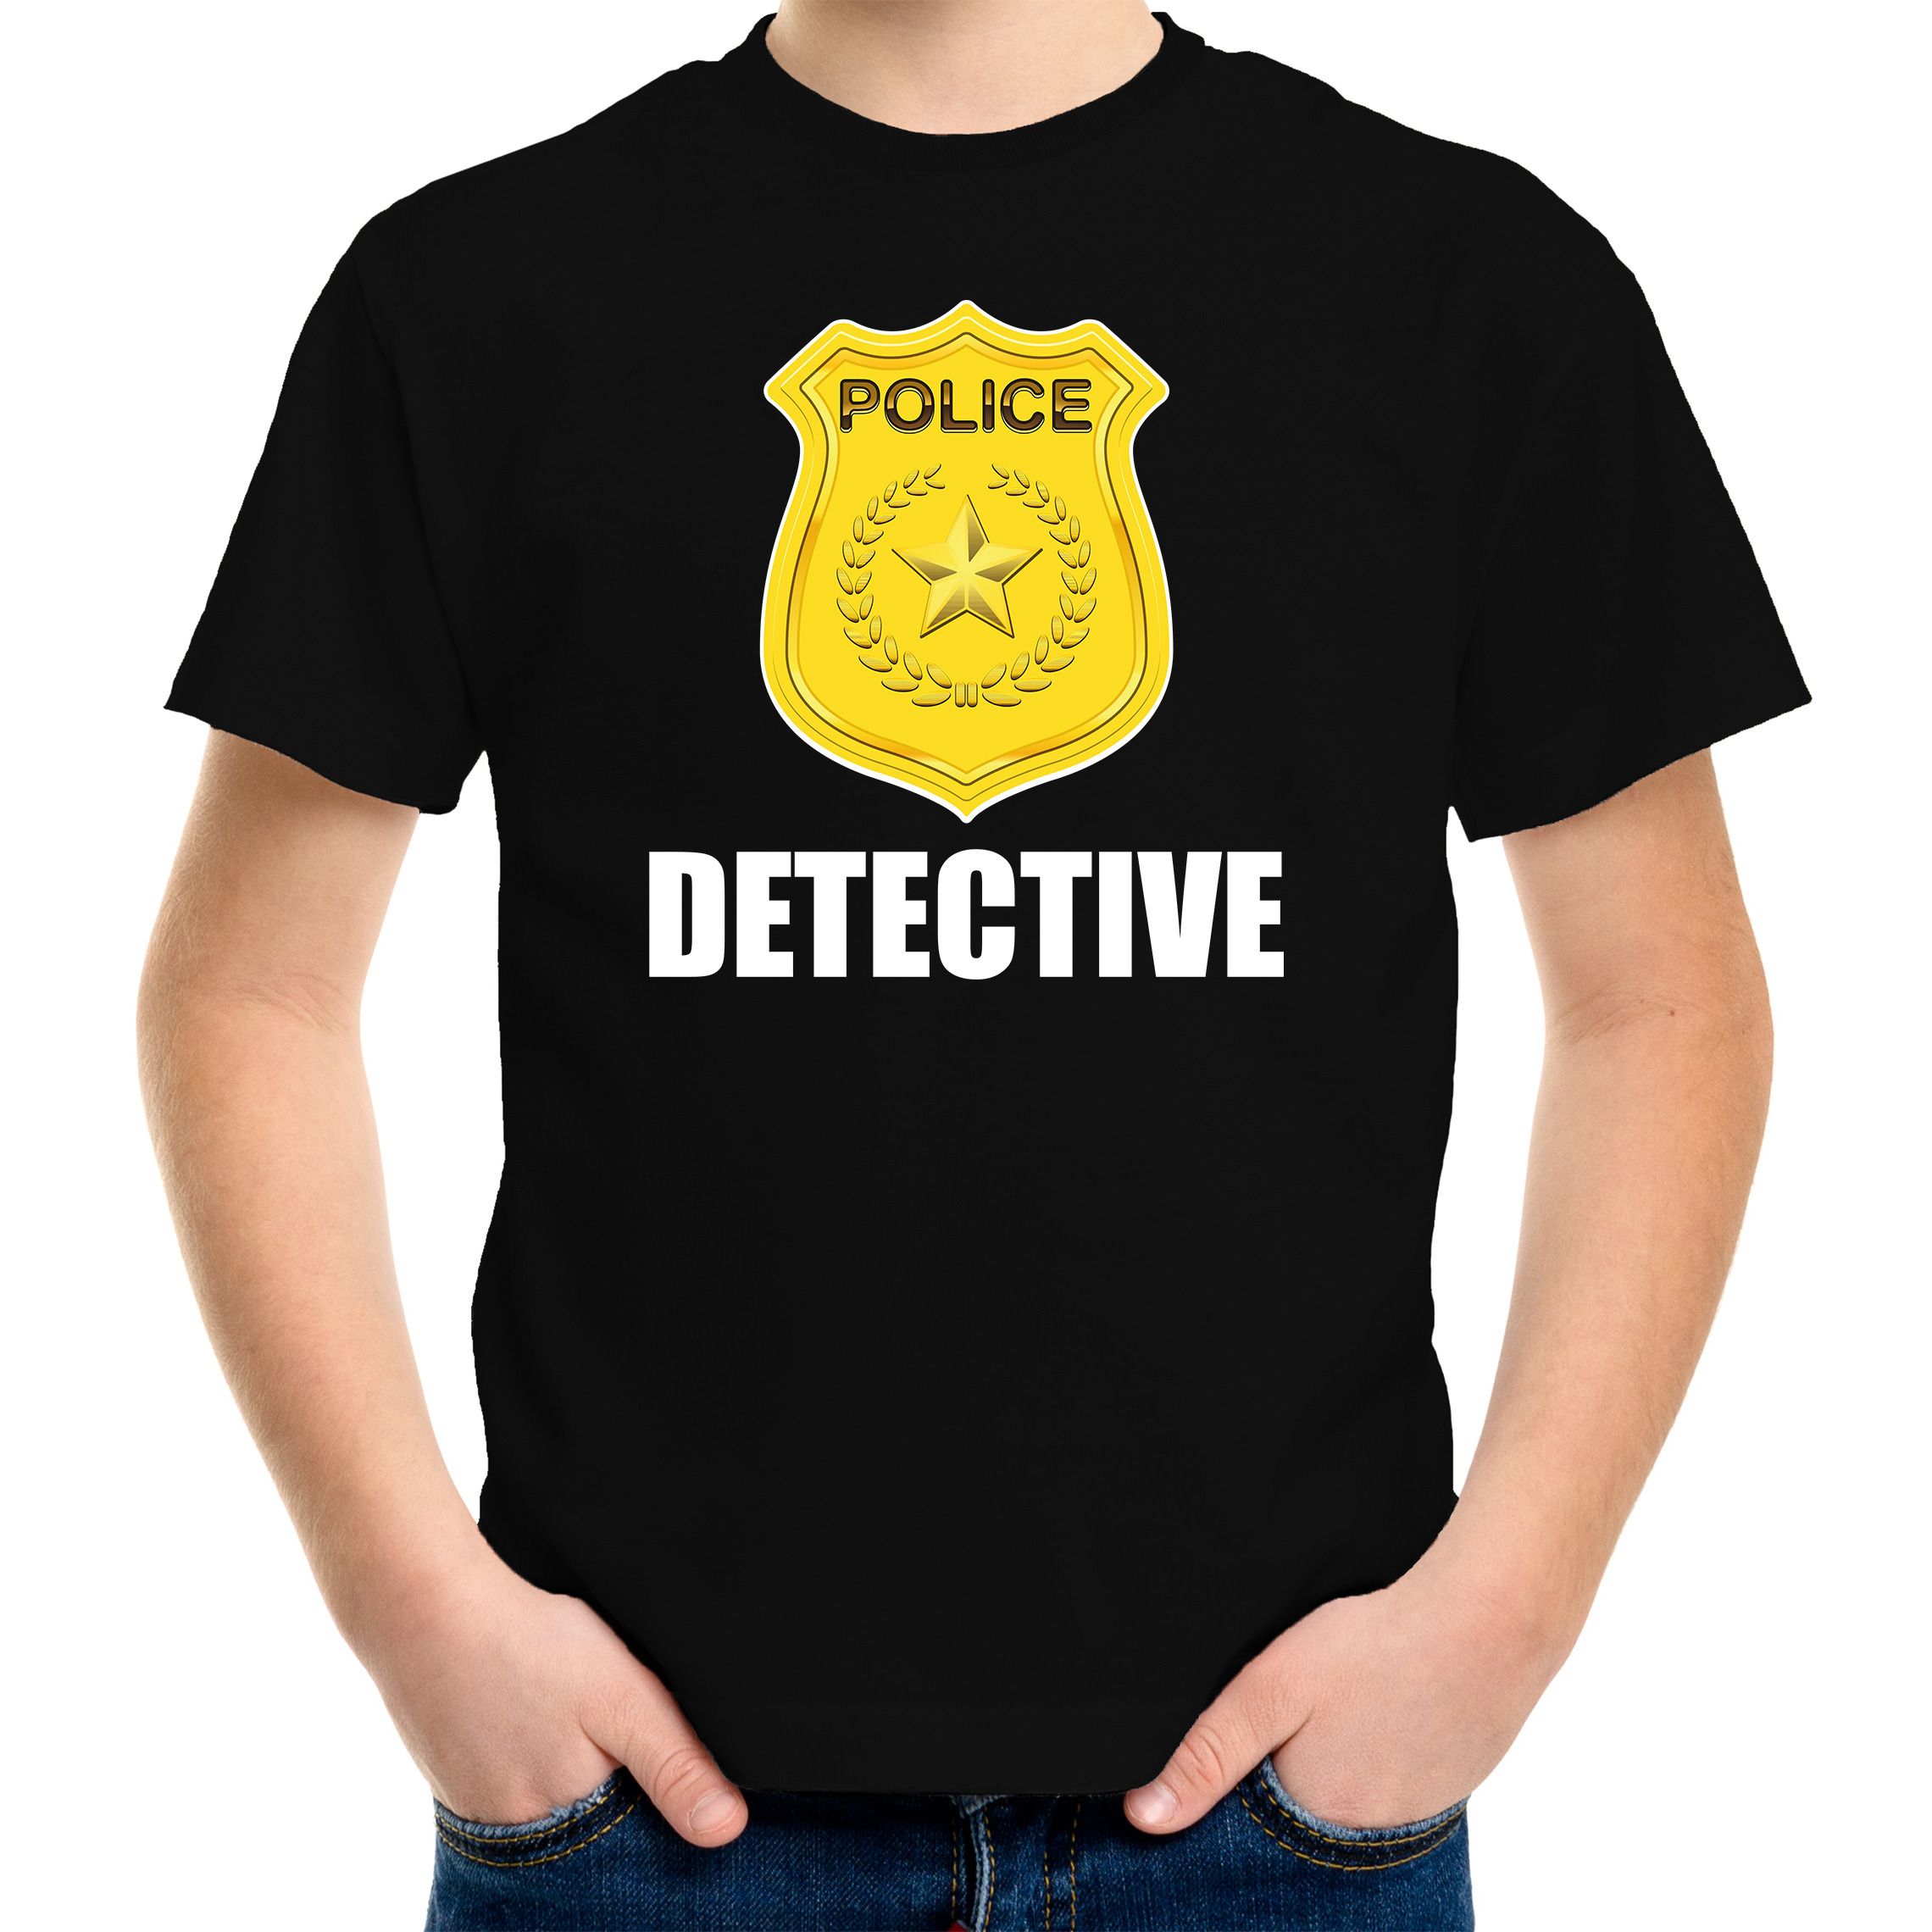 Politie-police embleem detective t-shirt zwart voor kinderen